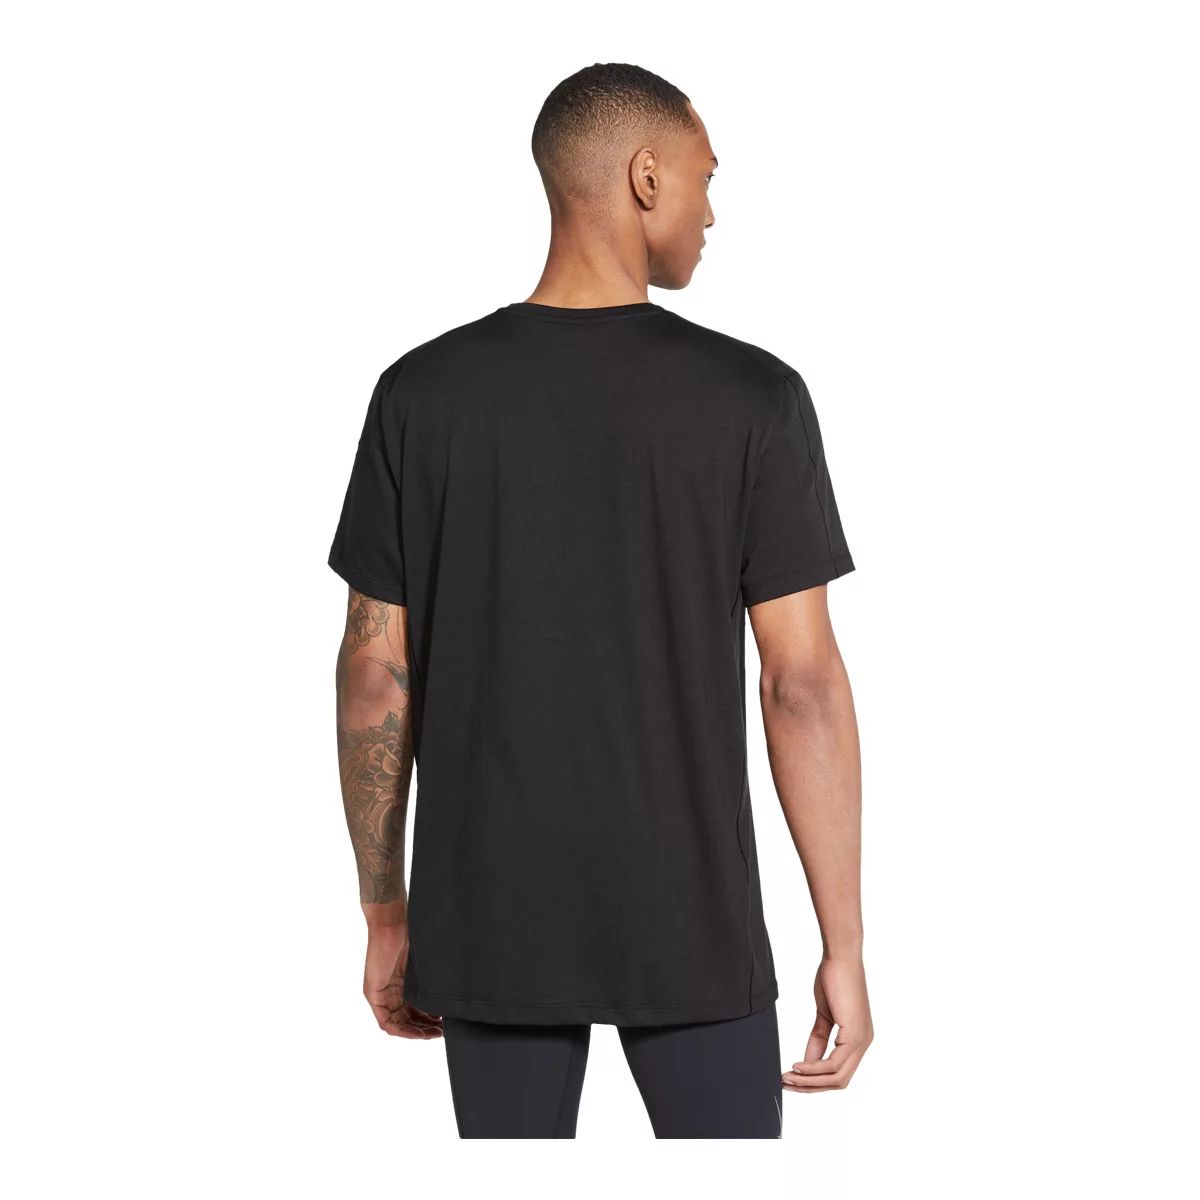 Nike Yoga DriFIT M DH1927230 Tshirt